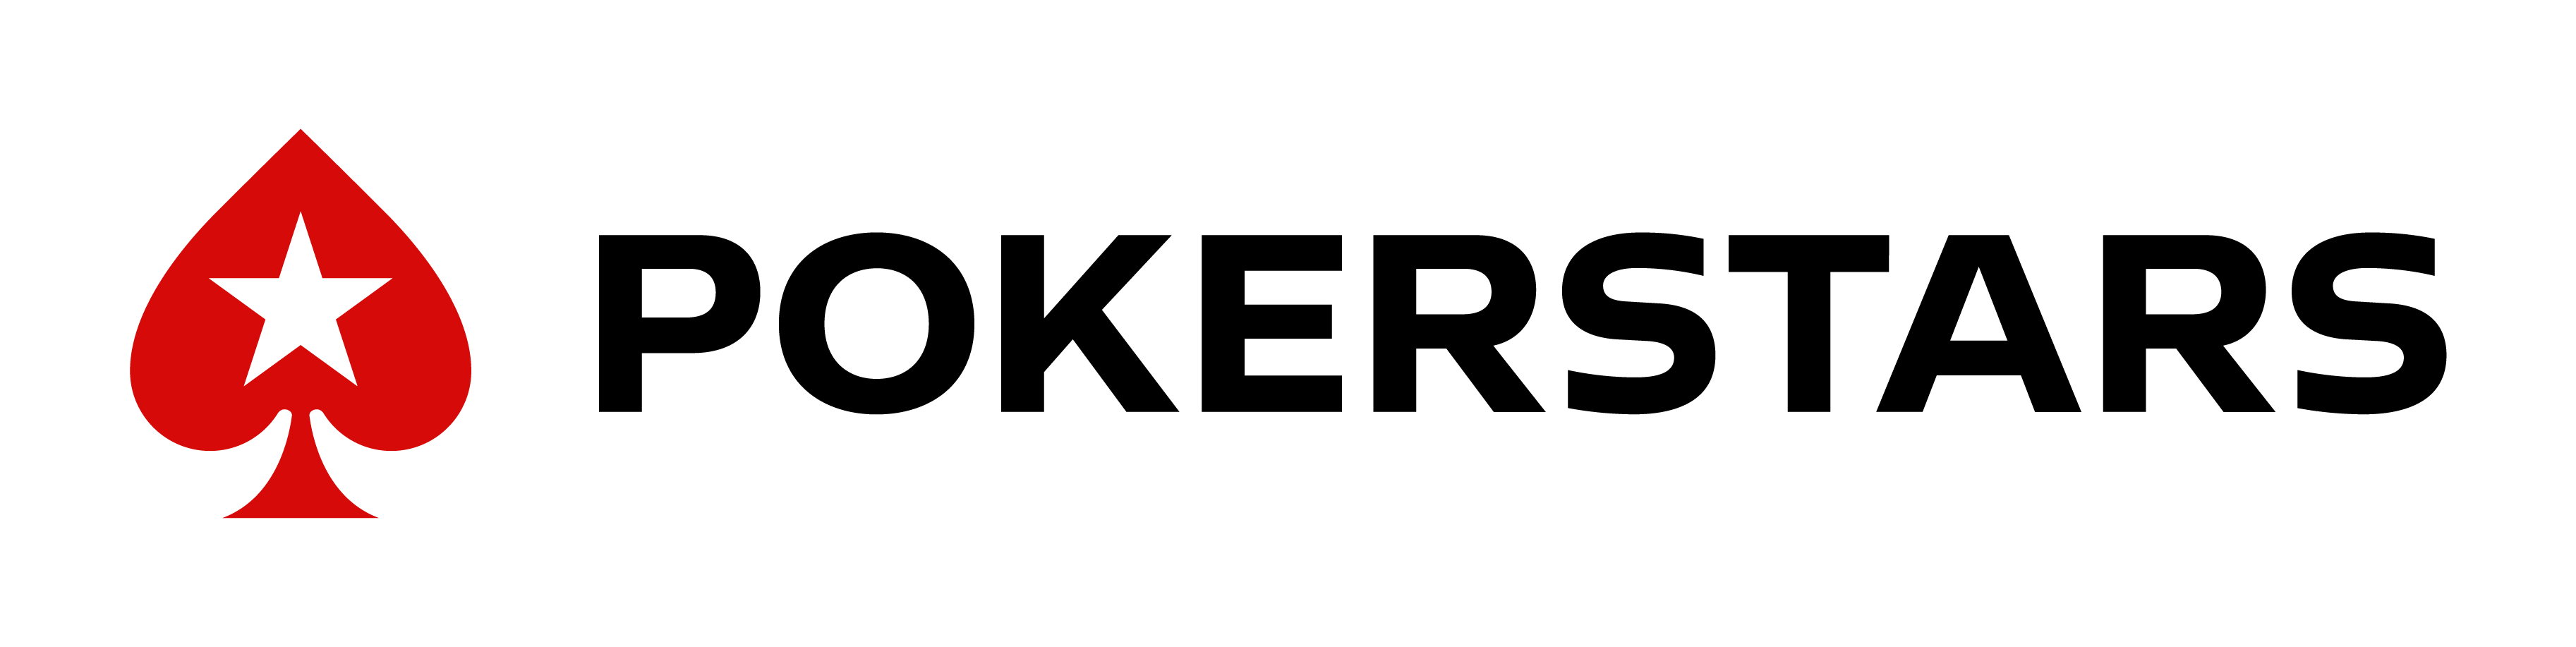 Poker stars logo